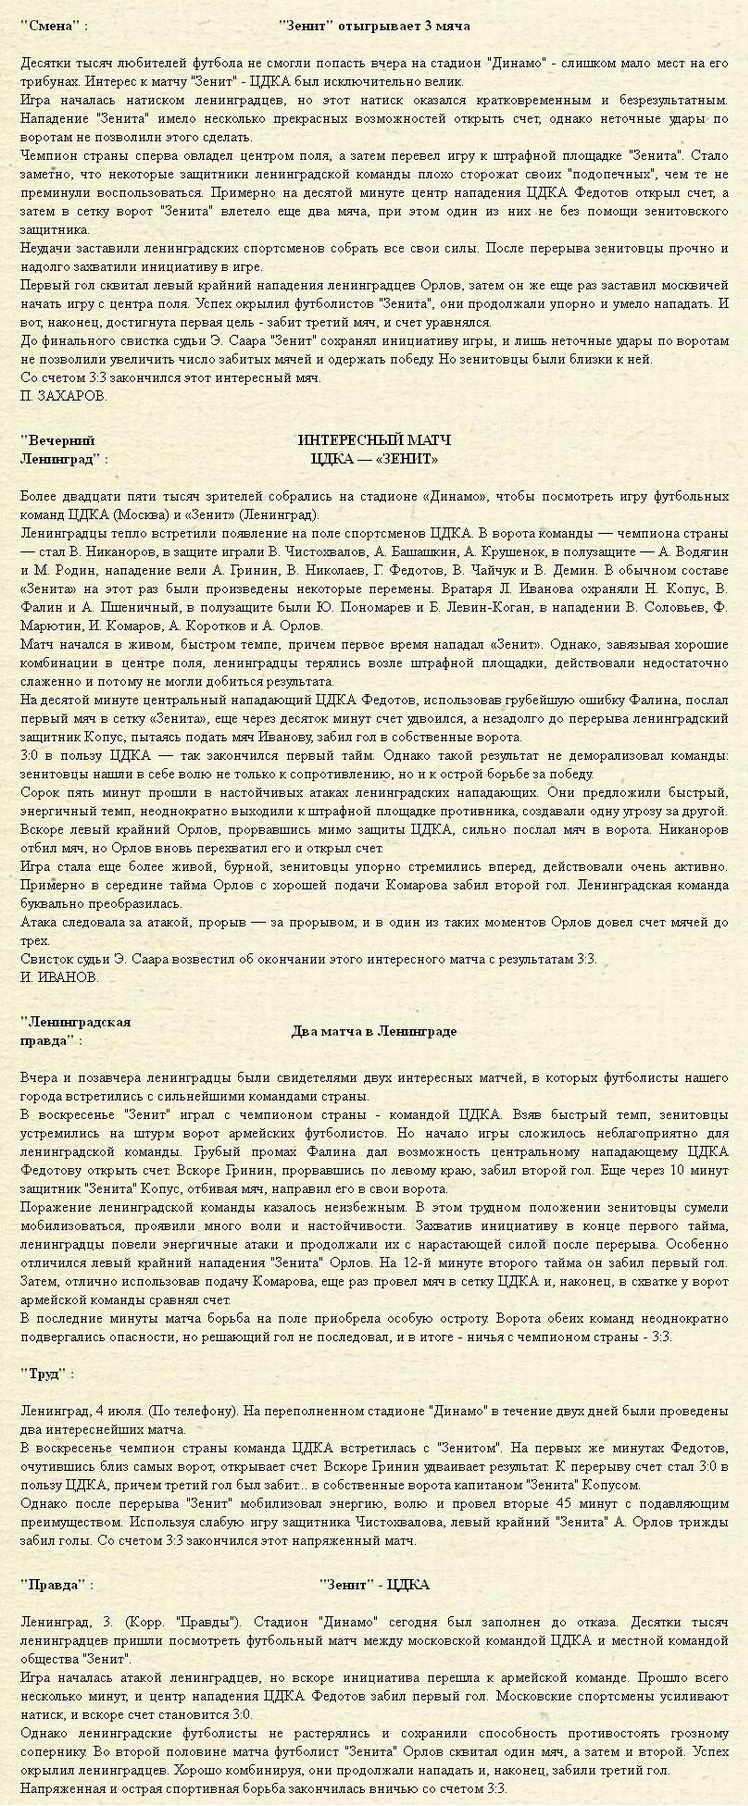 1949-07-03.Zenit-CDKA